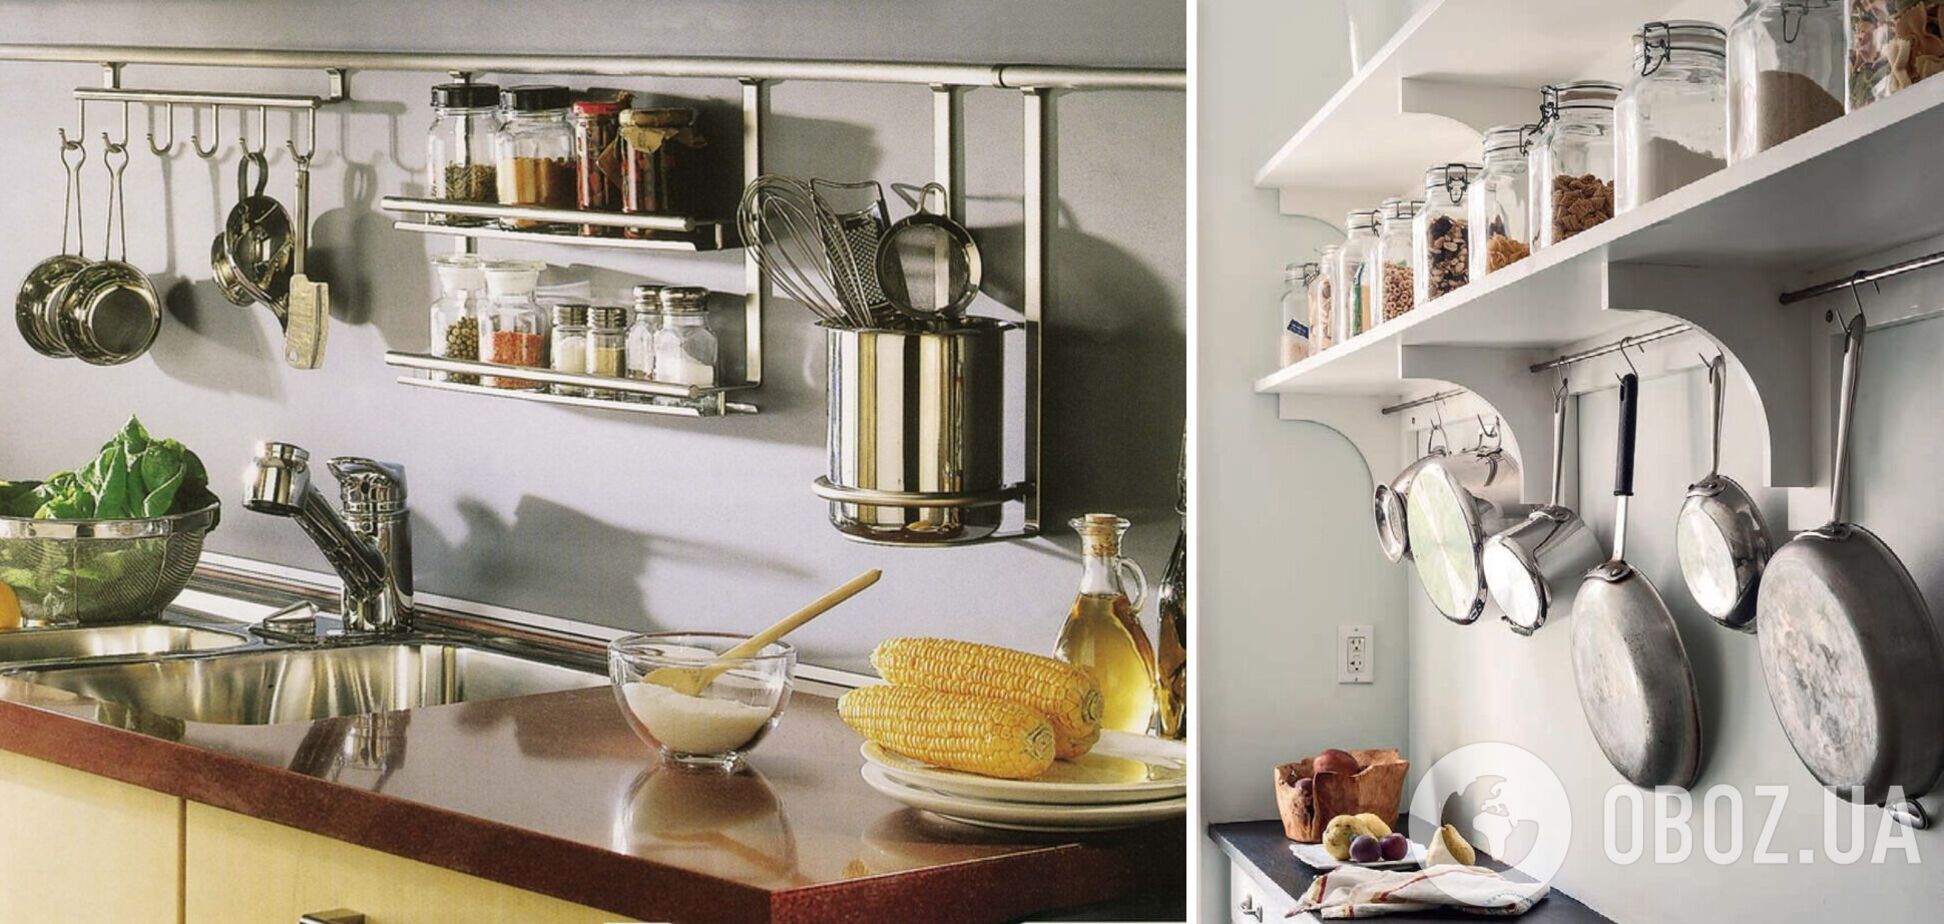 Как сэкономить место в кухонных шкафах: 3 простых лайфхака